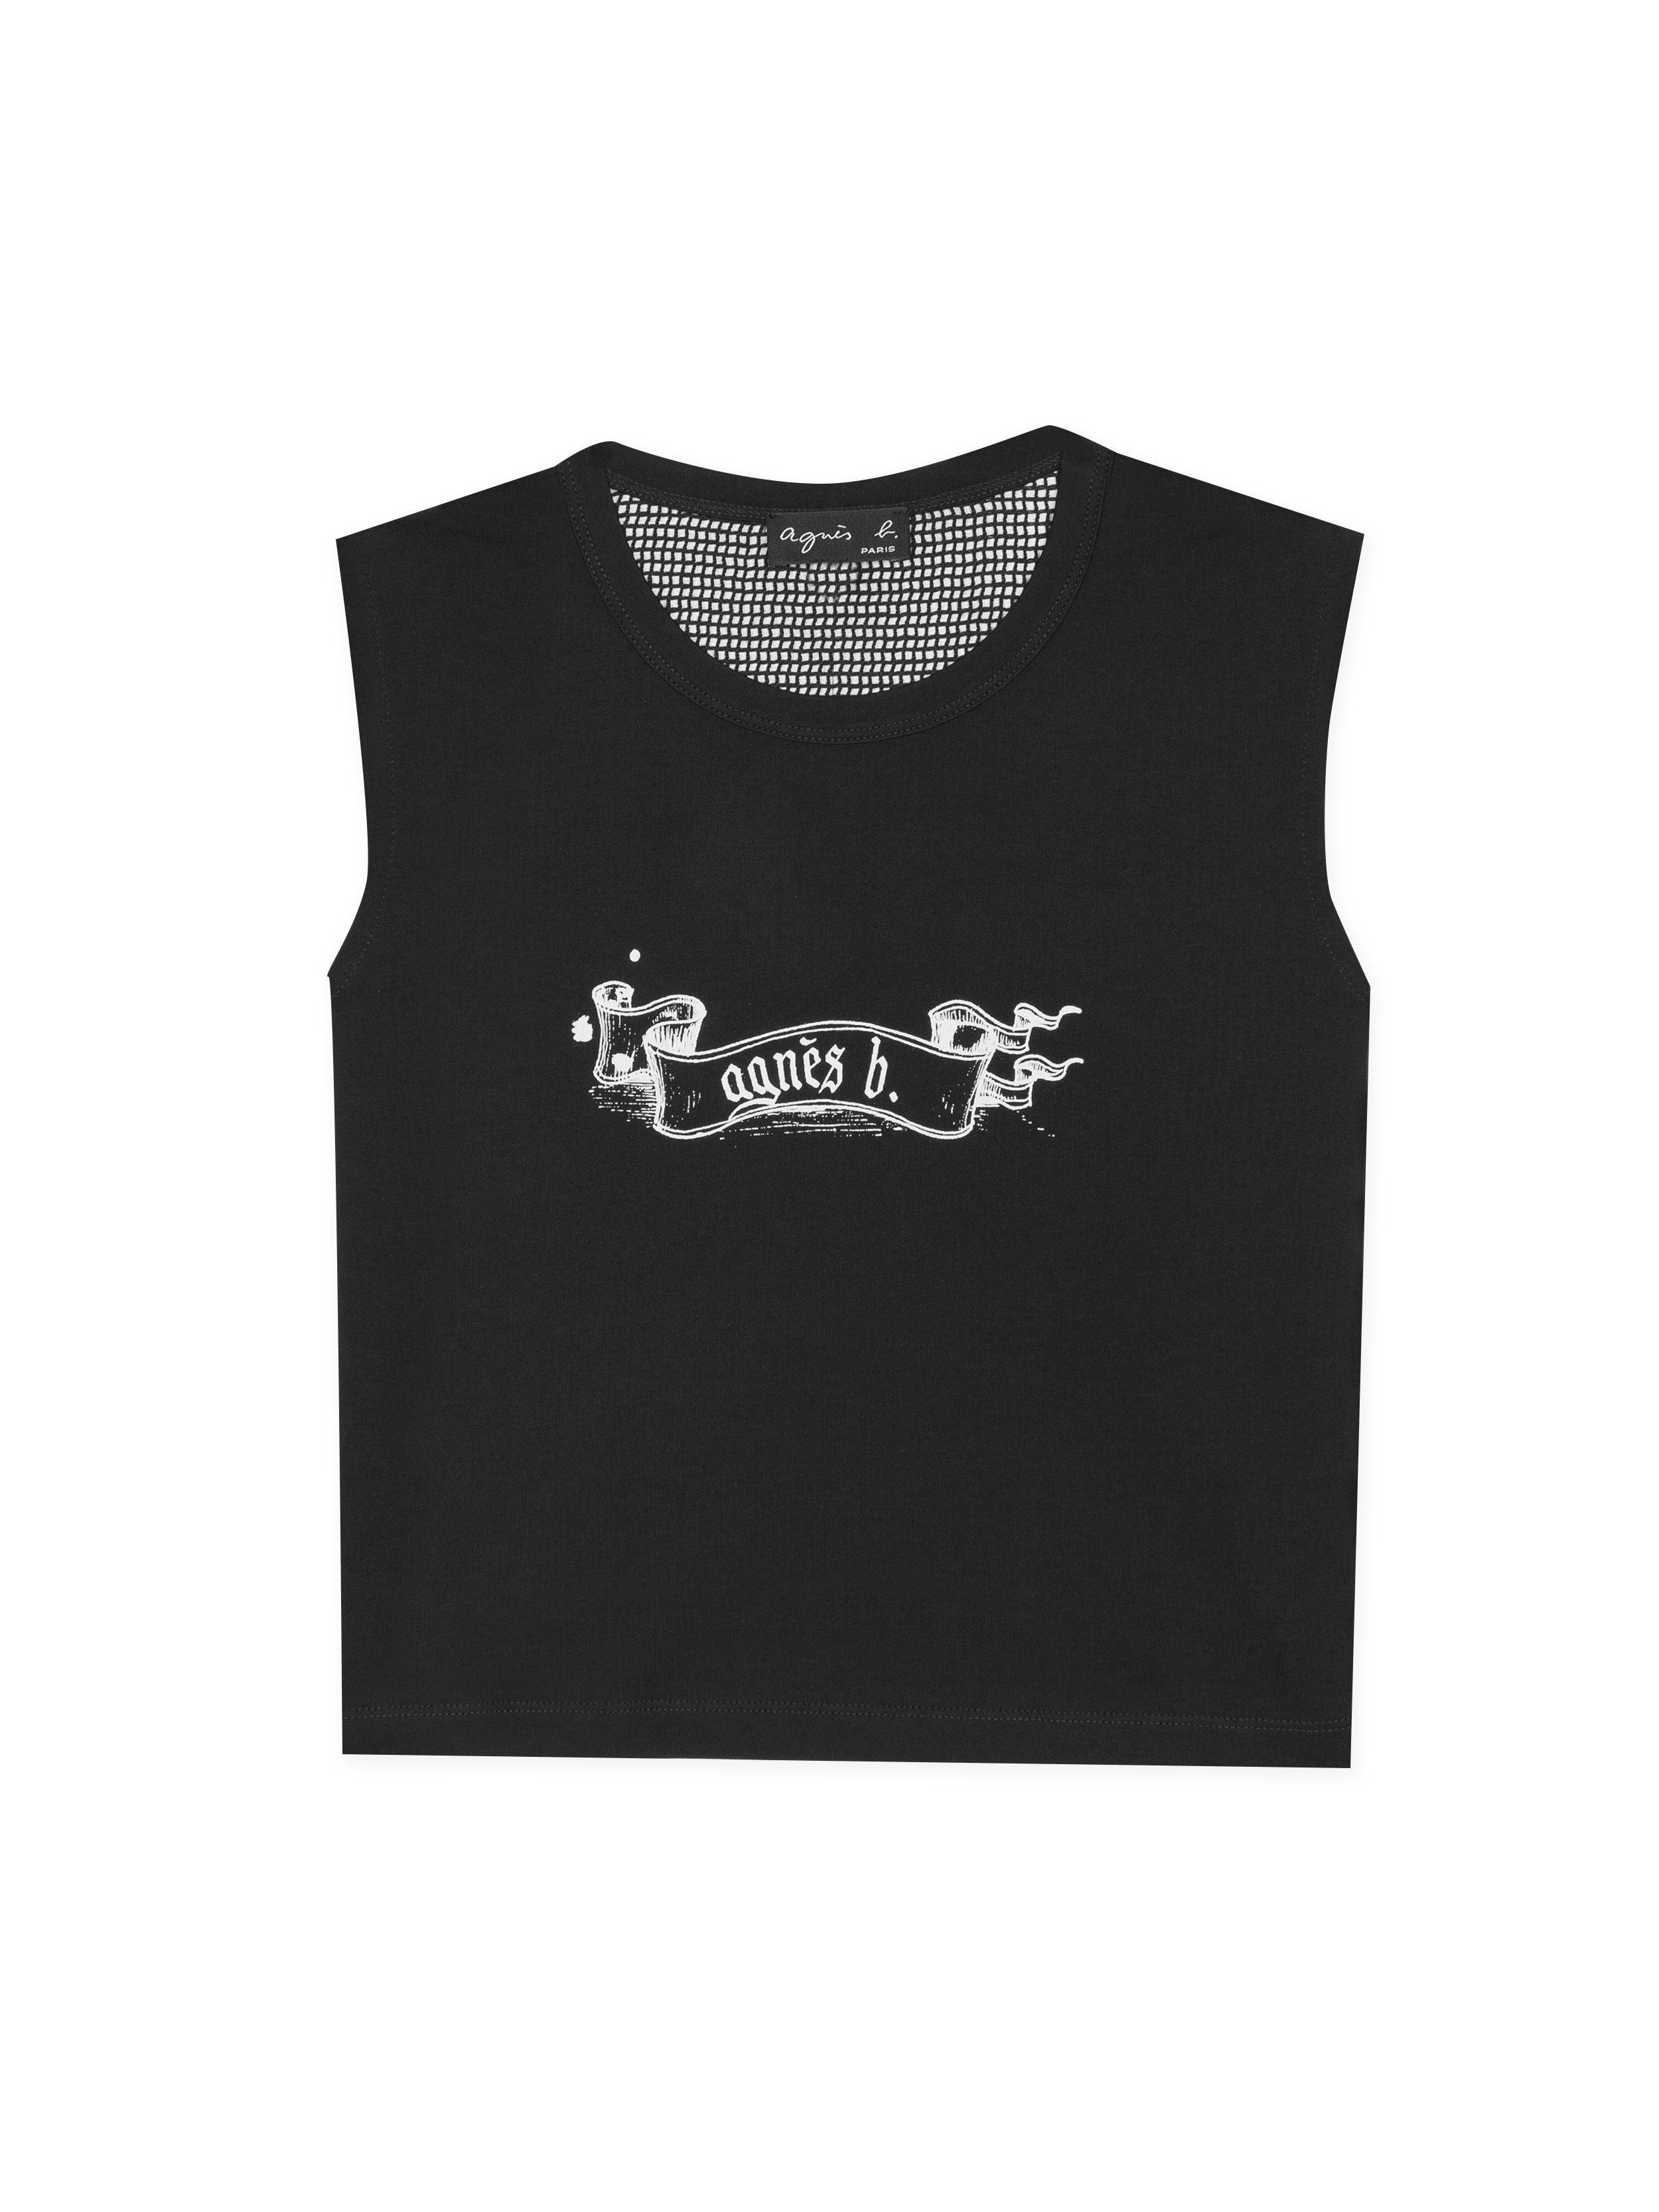 Gothic B Logo - Agnes B. Black Gothic Agnès B. Sleeveless T-shirt in Black - Lyst